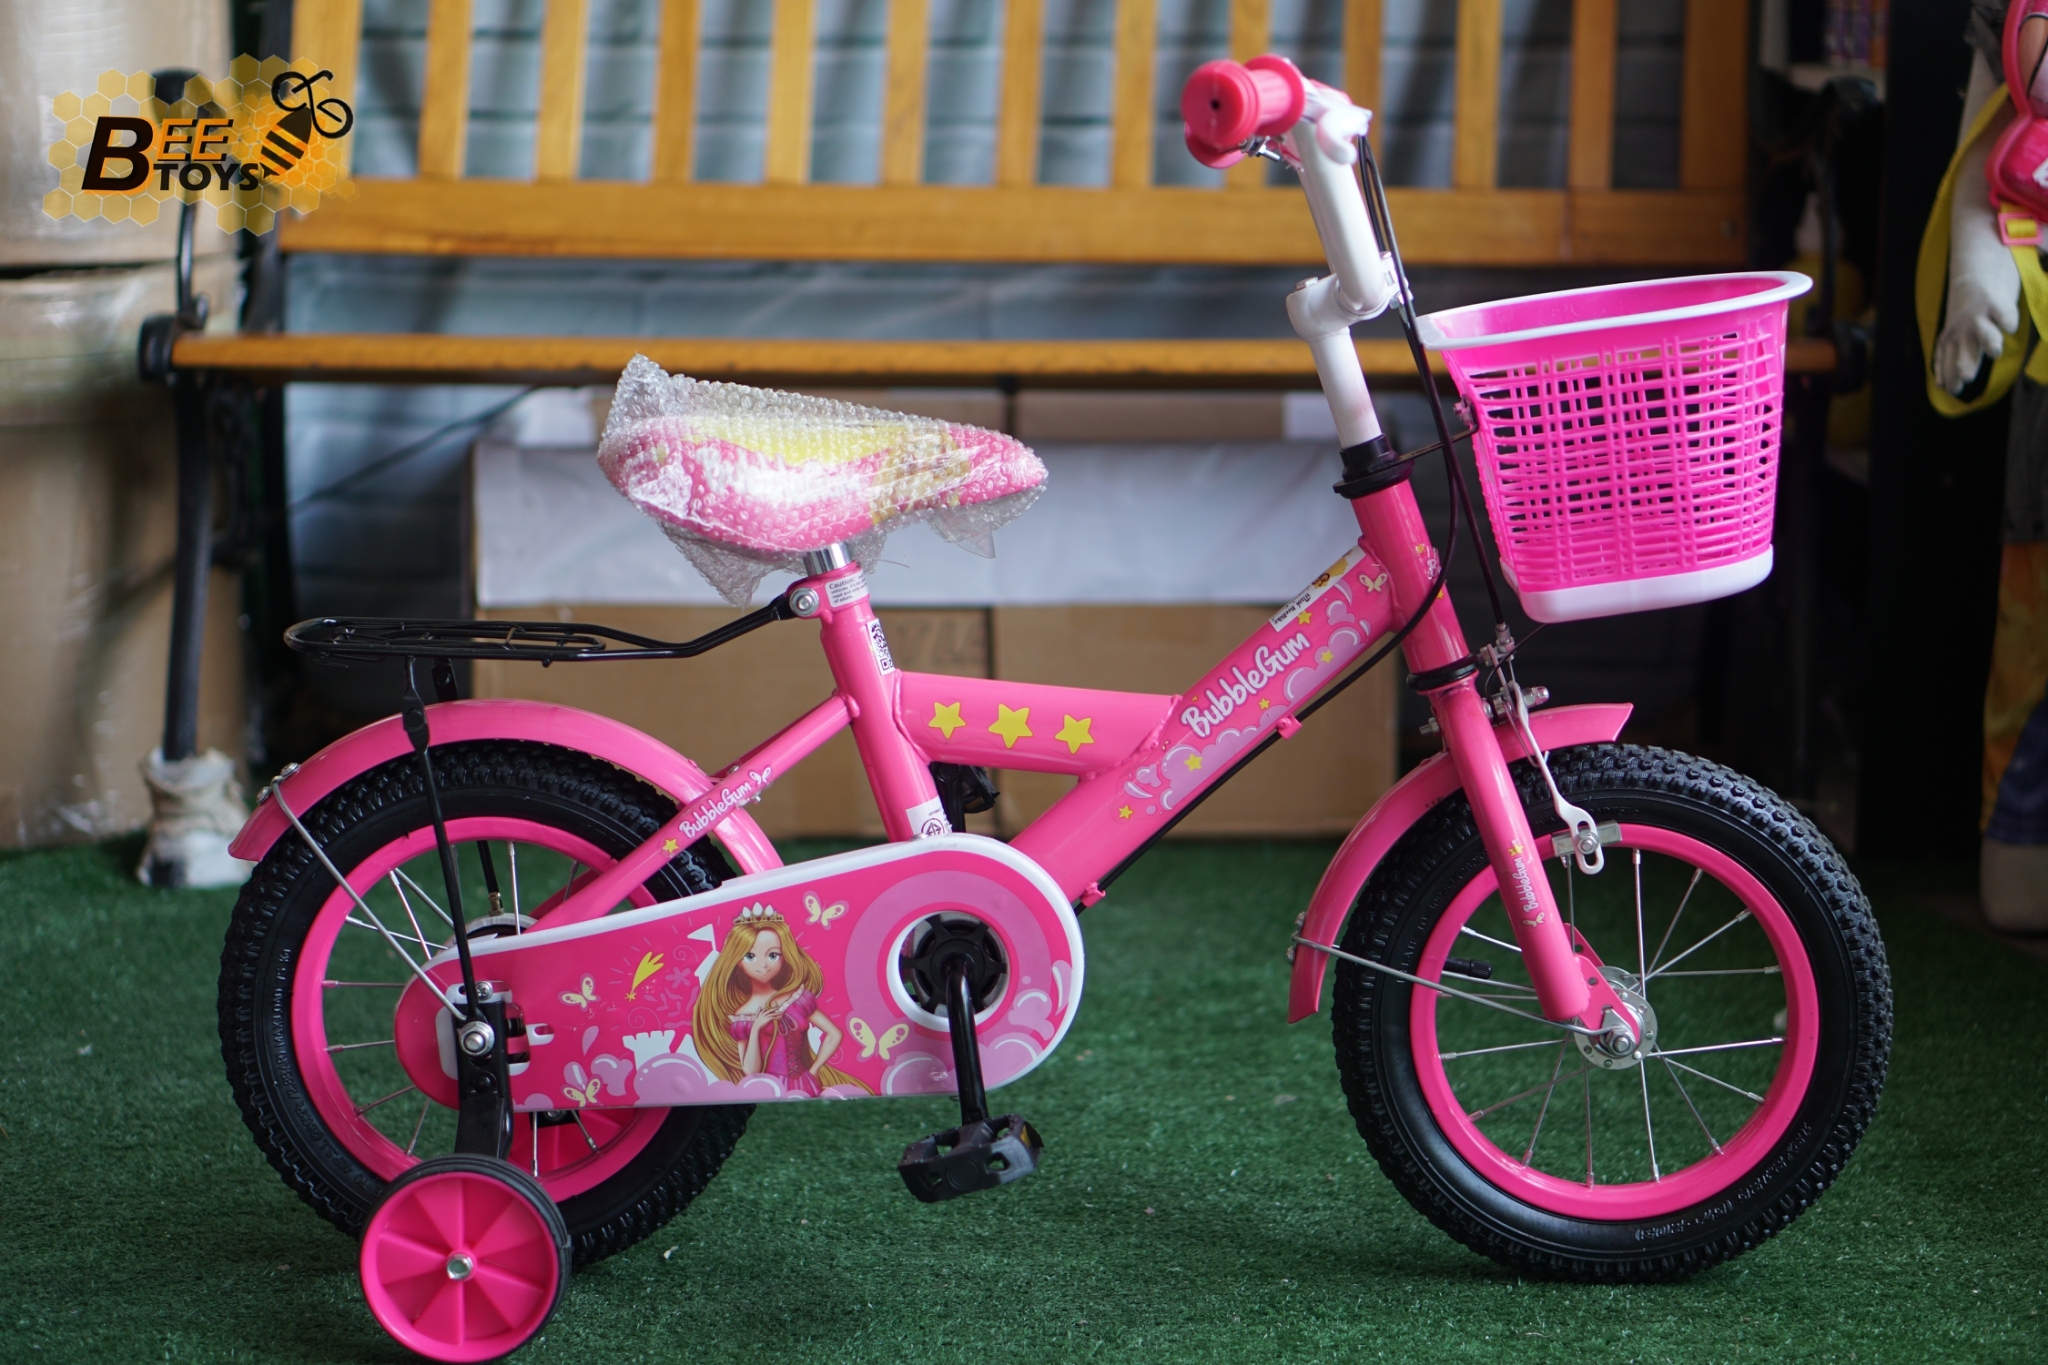 จักรยาน 12 นิ้ว Nano รุ่น Bubble Gum ลายเจ้าหญิง น่ารัก สำหรับ เด็ก 2-4 ขวบ คุณภาพดี ราคาถูก beetoy เก็บเงินปลายทางได้